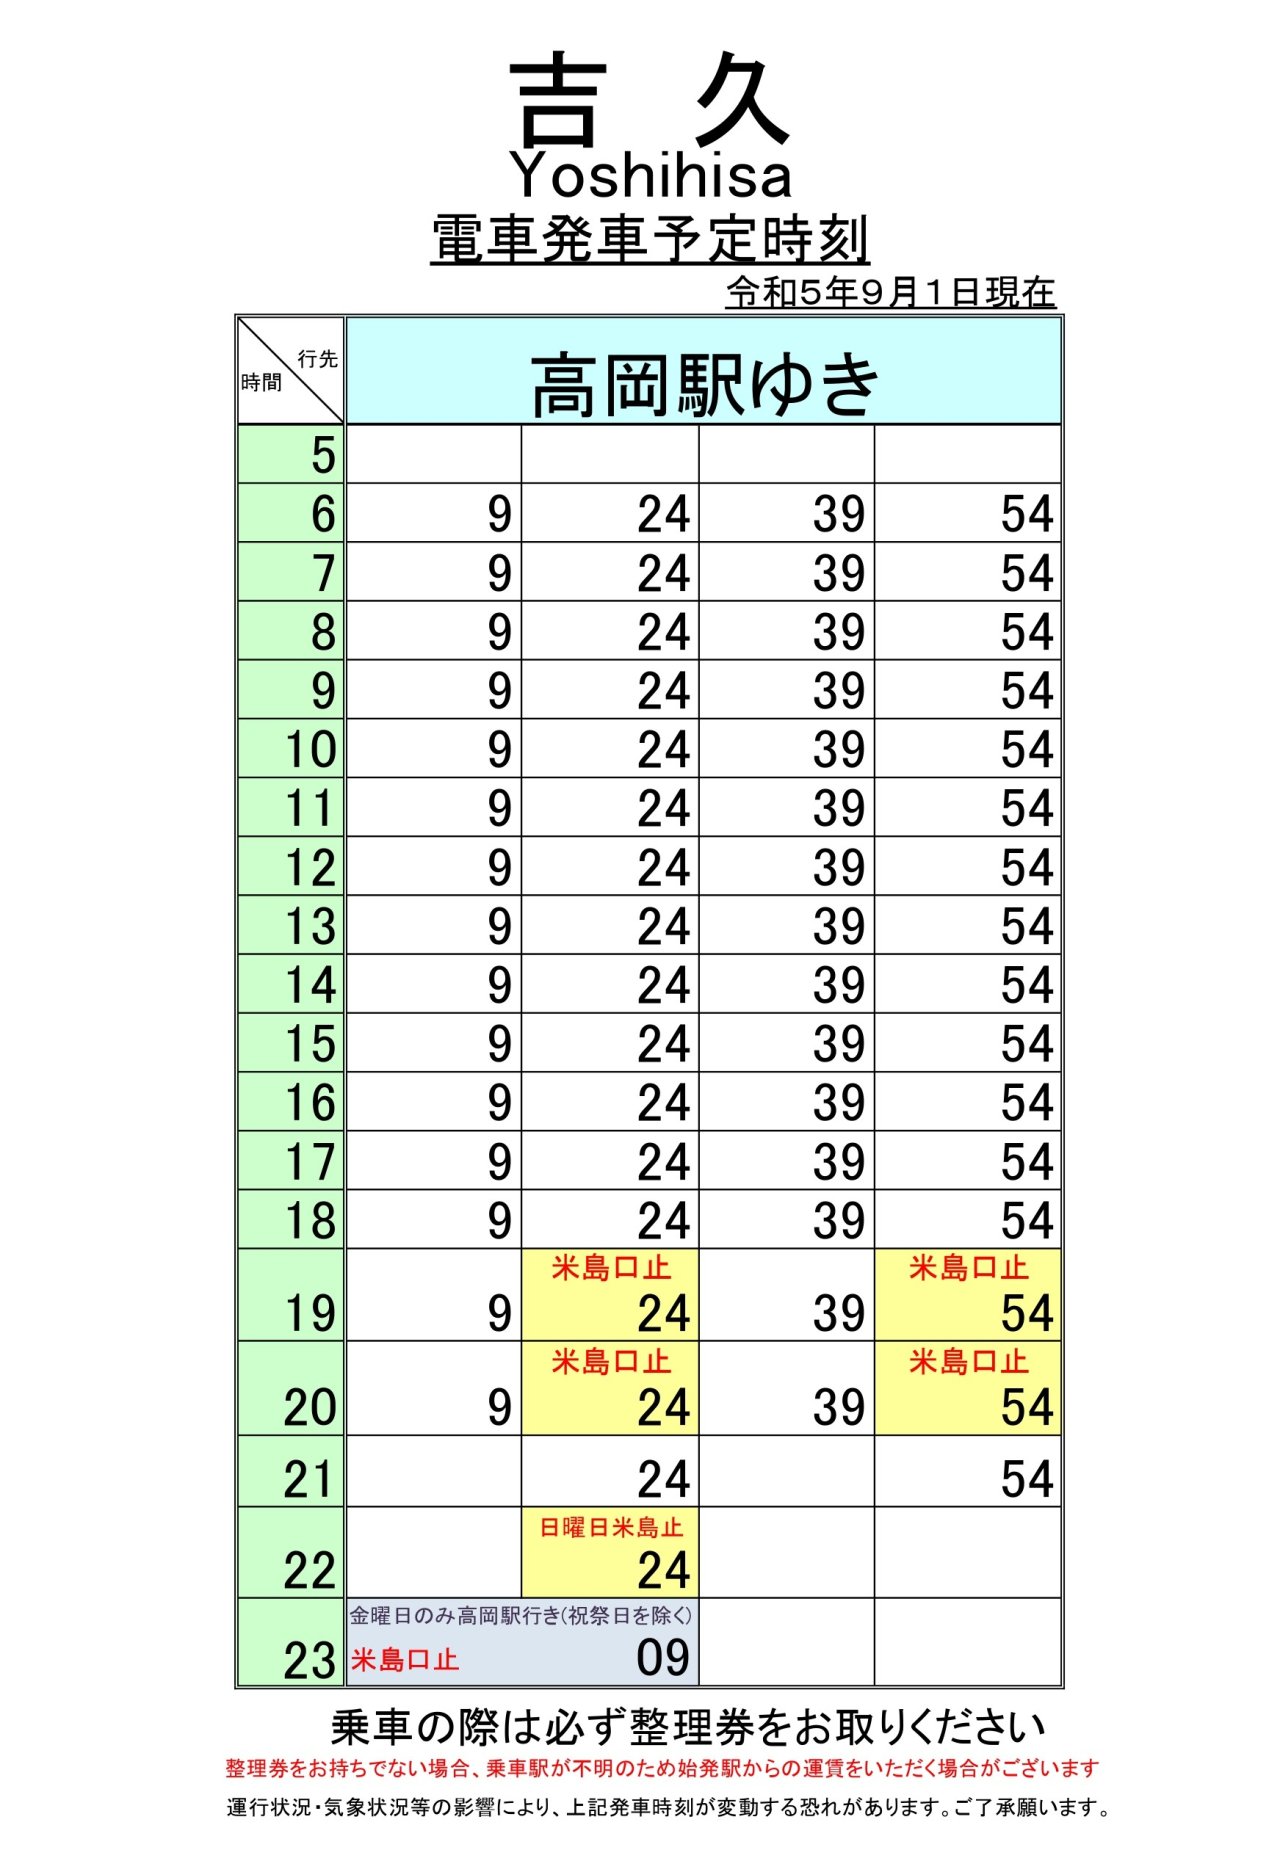 最新5.5.1改正各駅時刻表(吉久)_page-0002